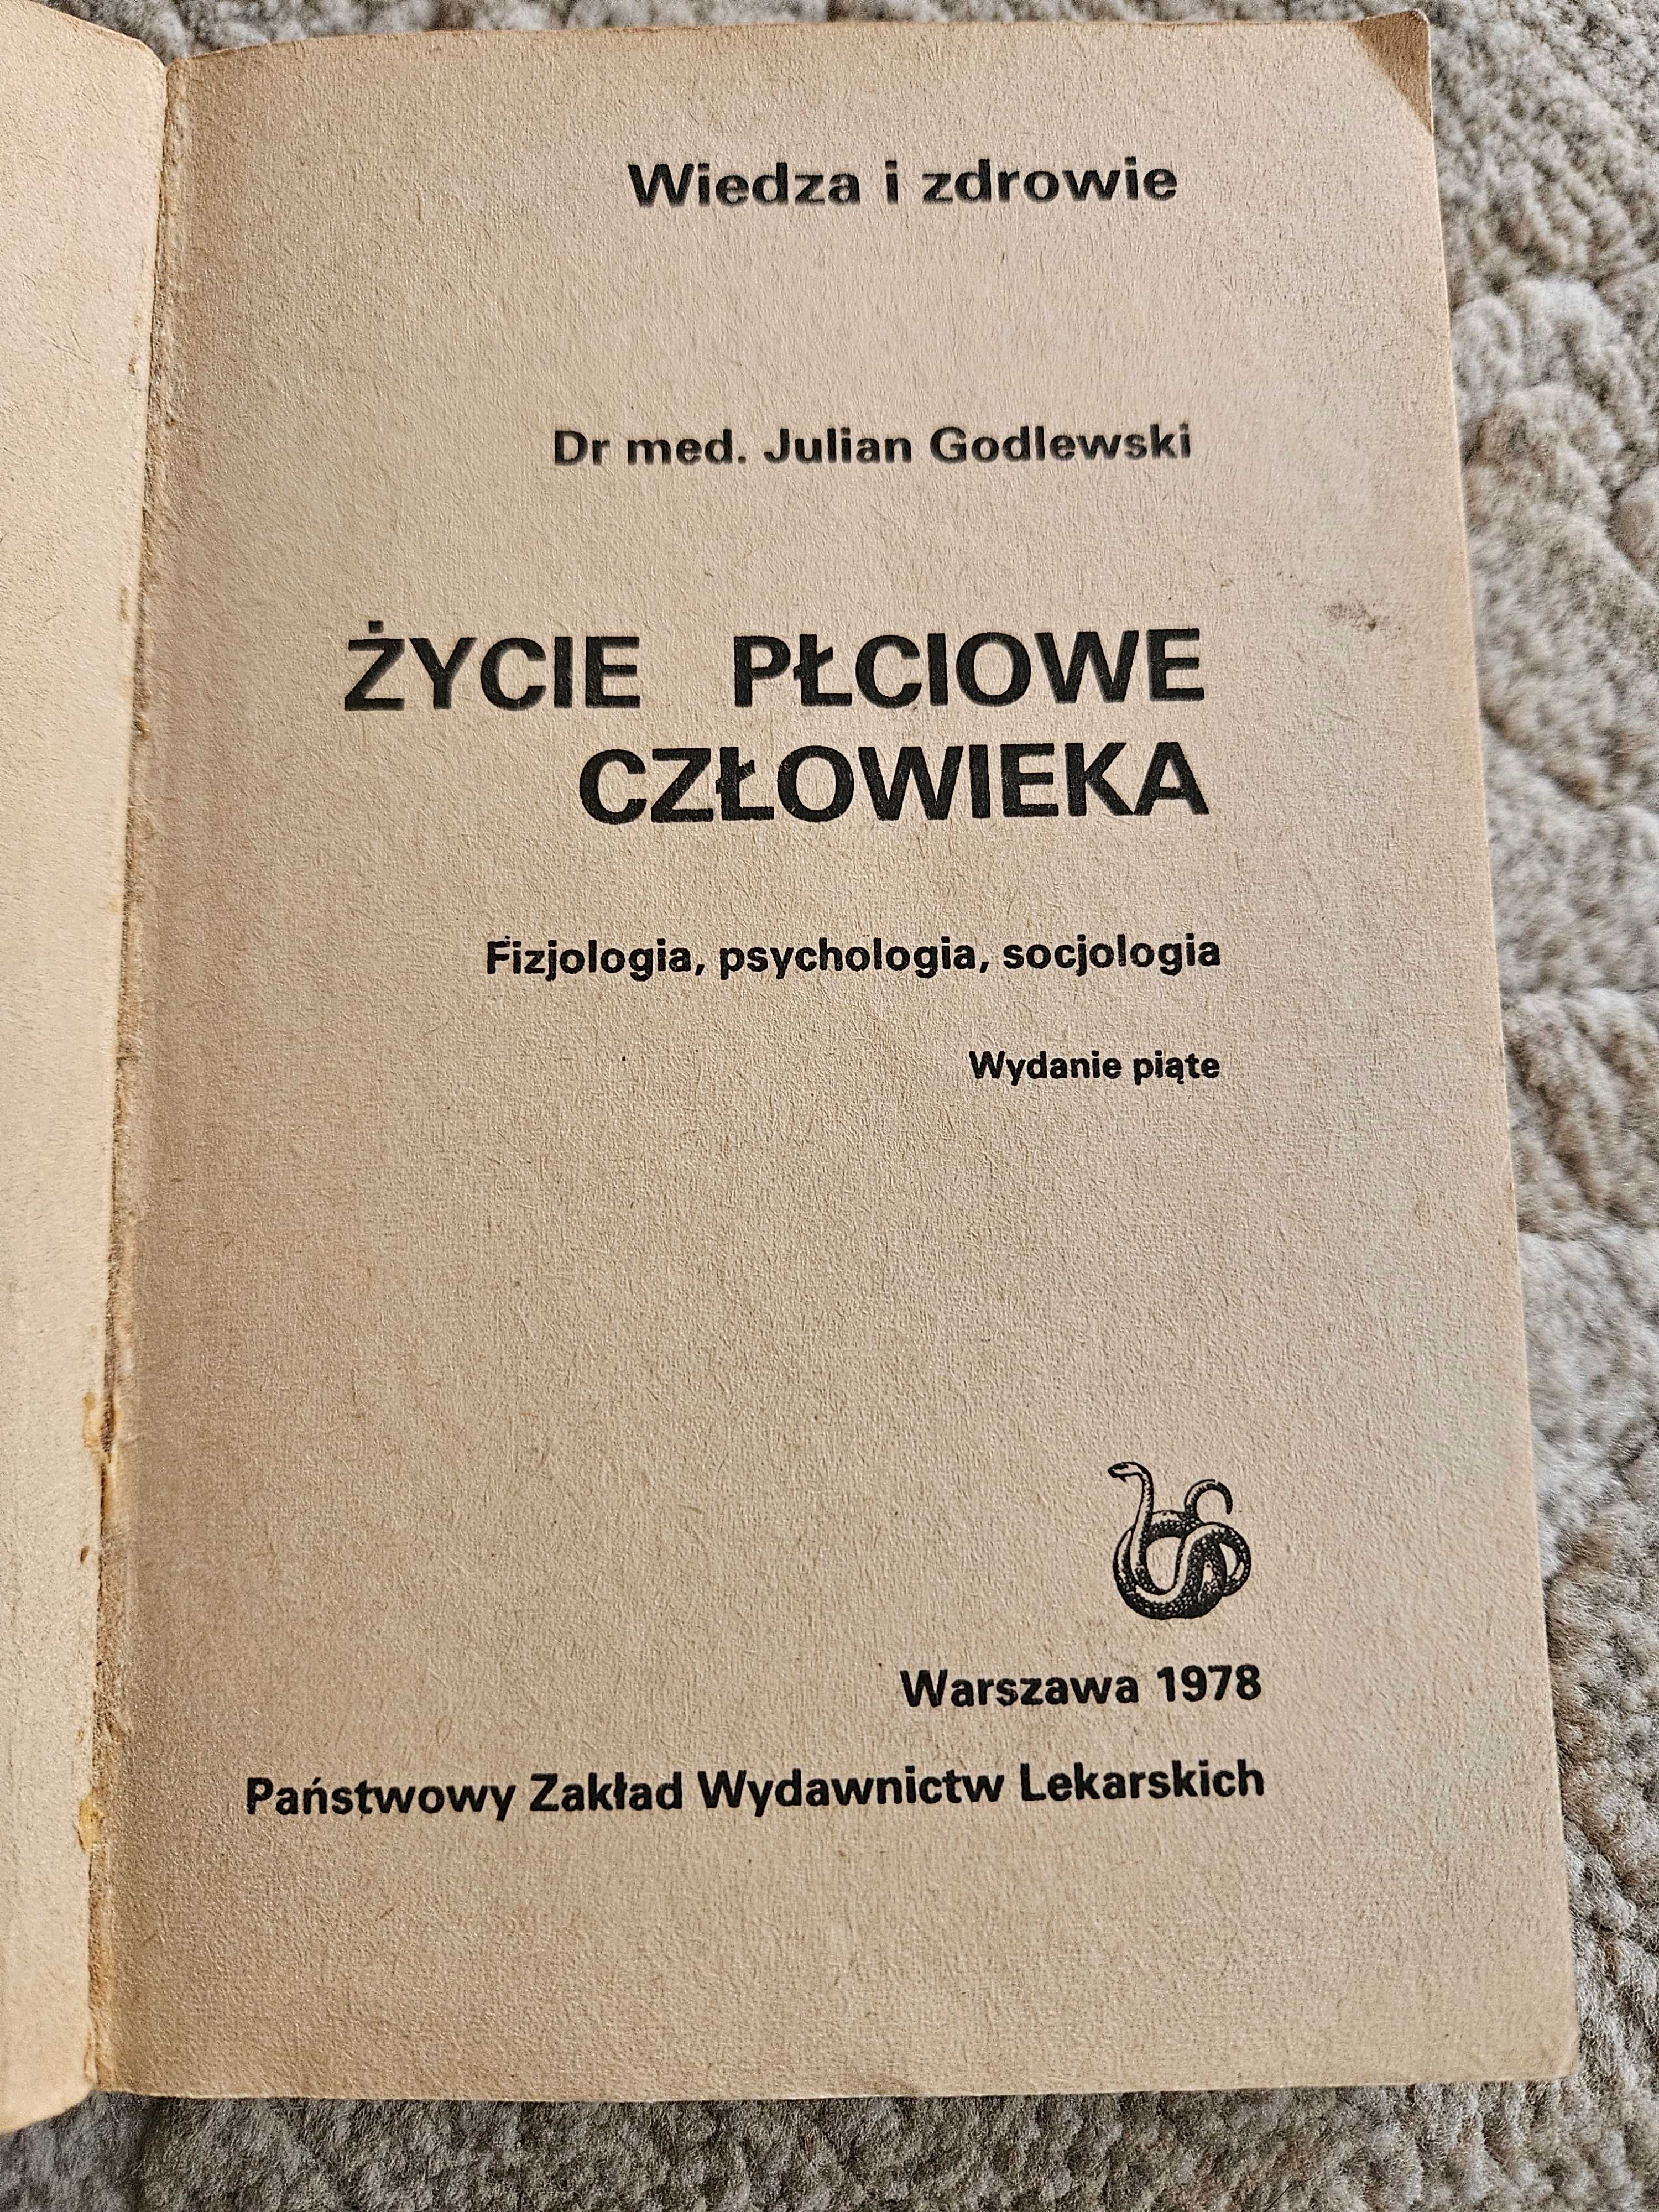 " Życie płciowe człowieka "dr Julian Godlewski 1978 - vintage prl